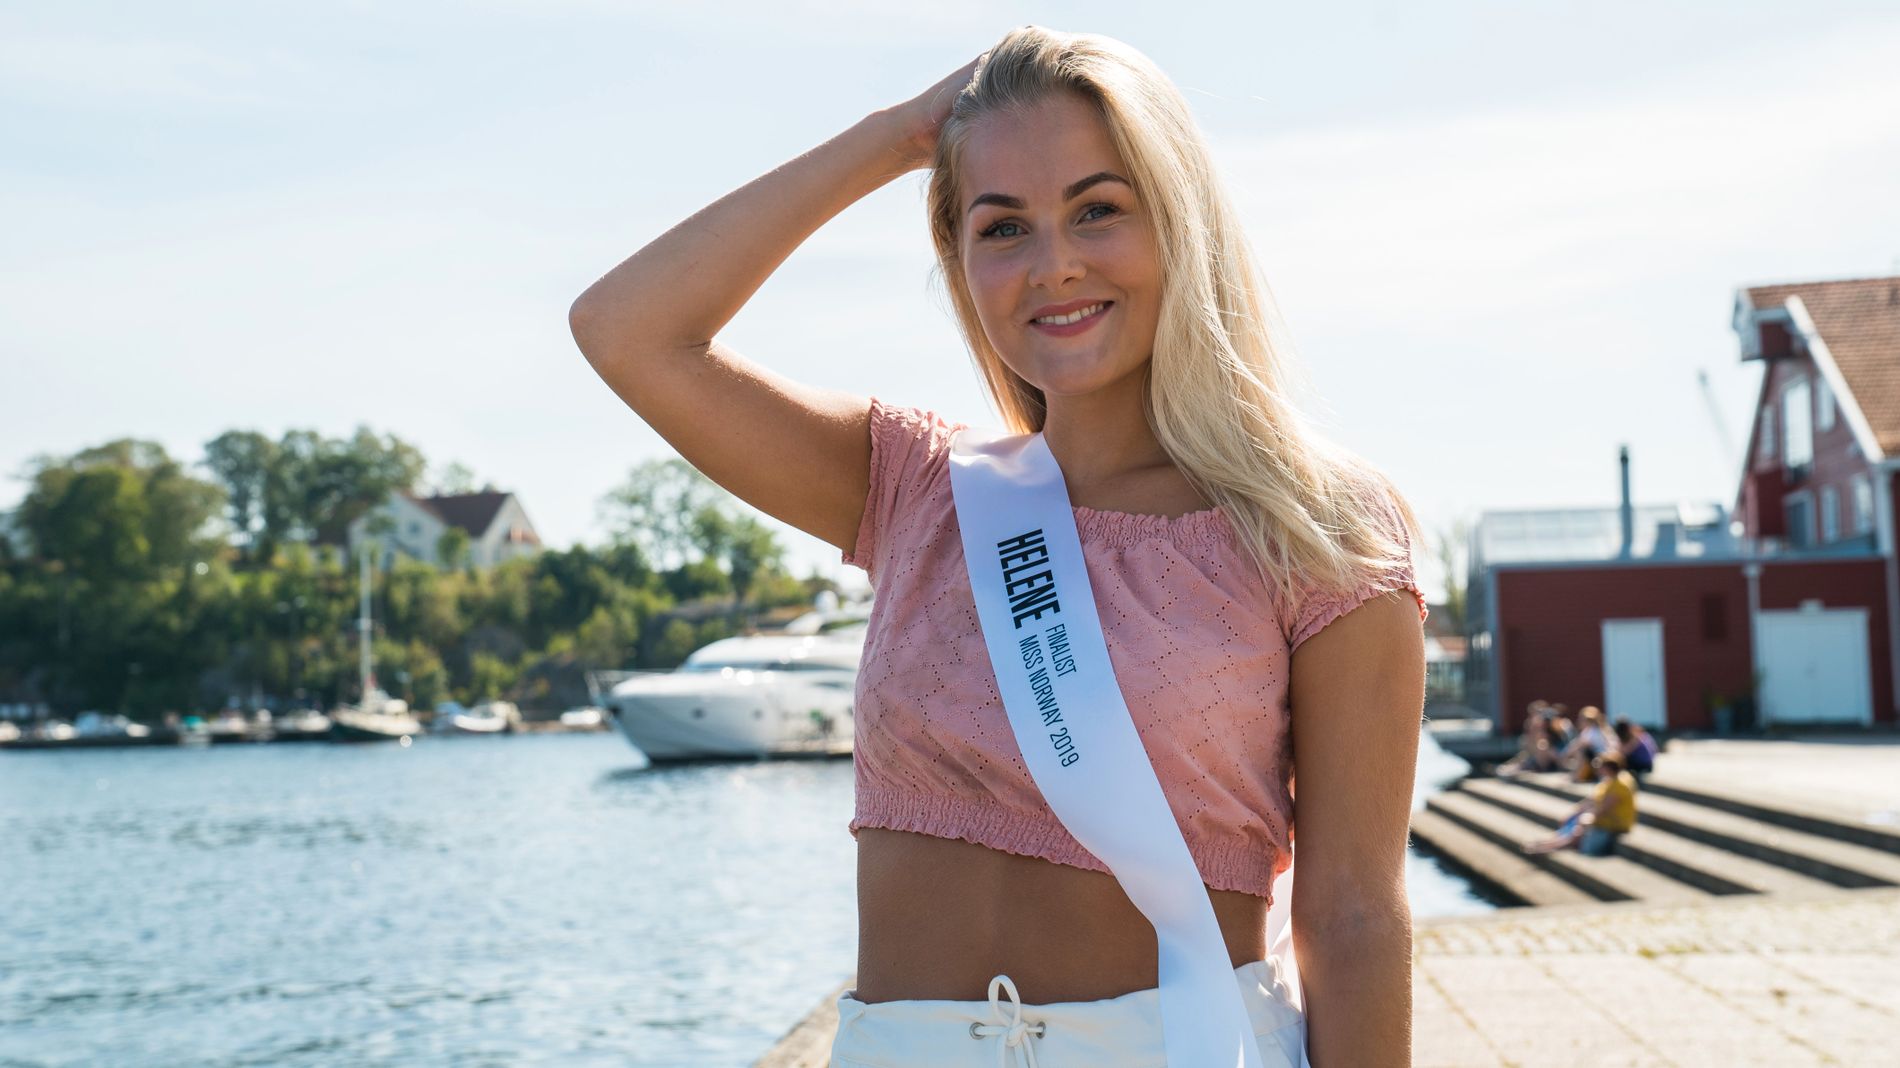 Helene Abildsnes fra Kristiansand er en av ni finalister i Miss Norway, som kåres fredag. Hun kom også langt i konkurransen i 2017 og 2018. 